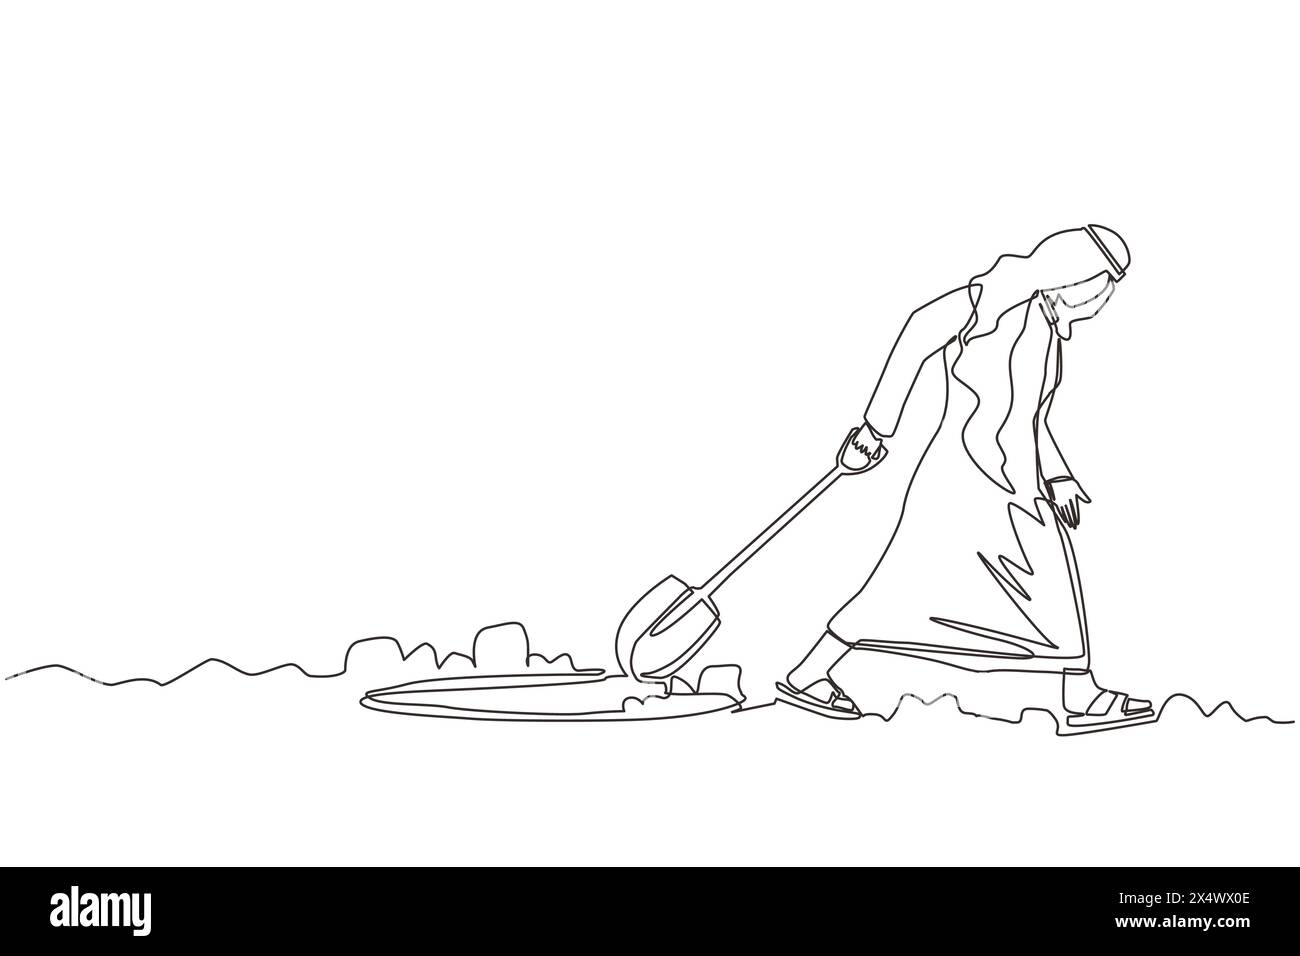 Linea singola continua che disegna un uomo d'affari arabo che cammina in modo irregolare lasciando la pala scavata nel buco. Un uomo scavava nel tunnel cercando di arrivare a Goal. Ha dato Illustrazione Vettoriale